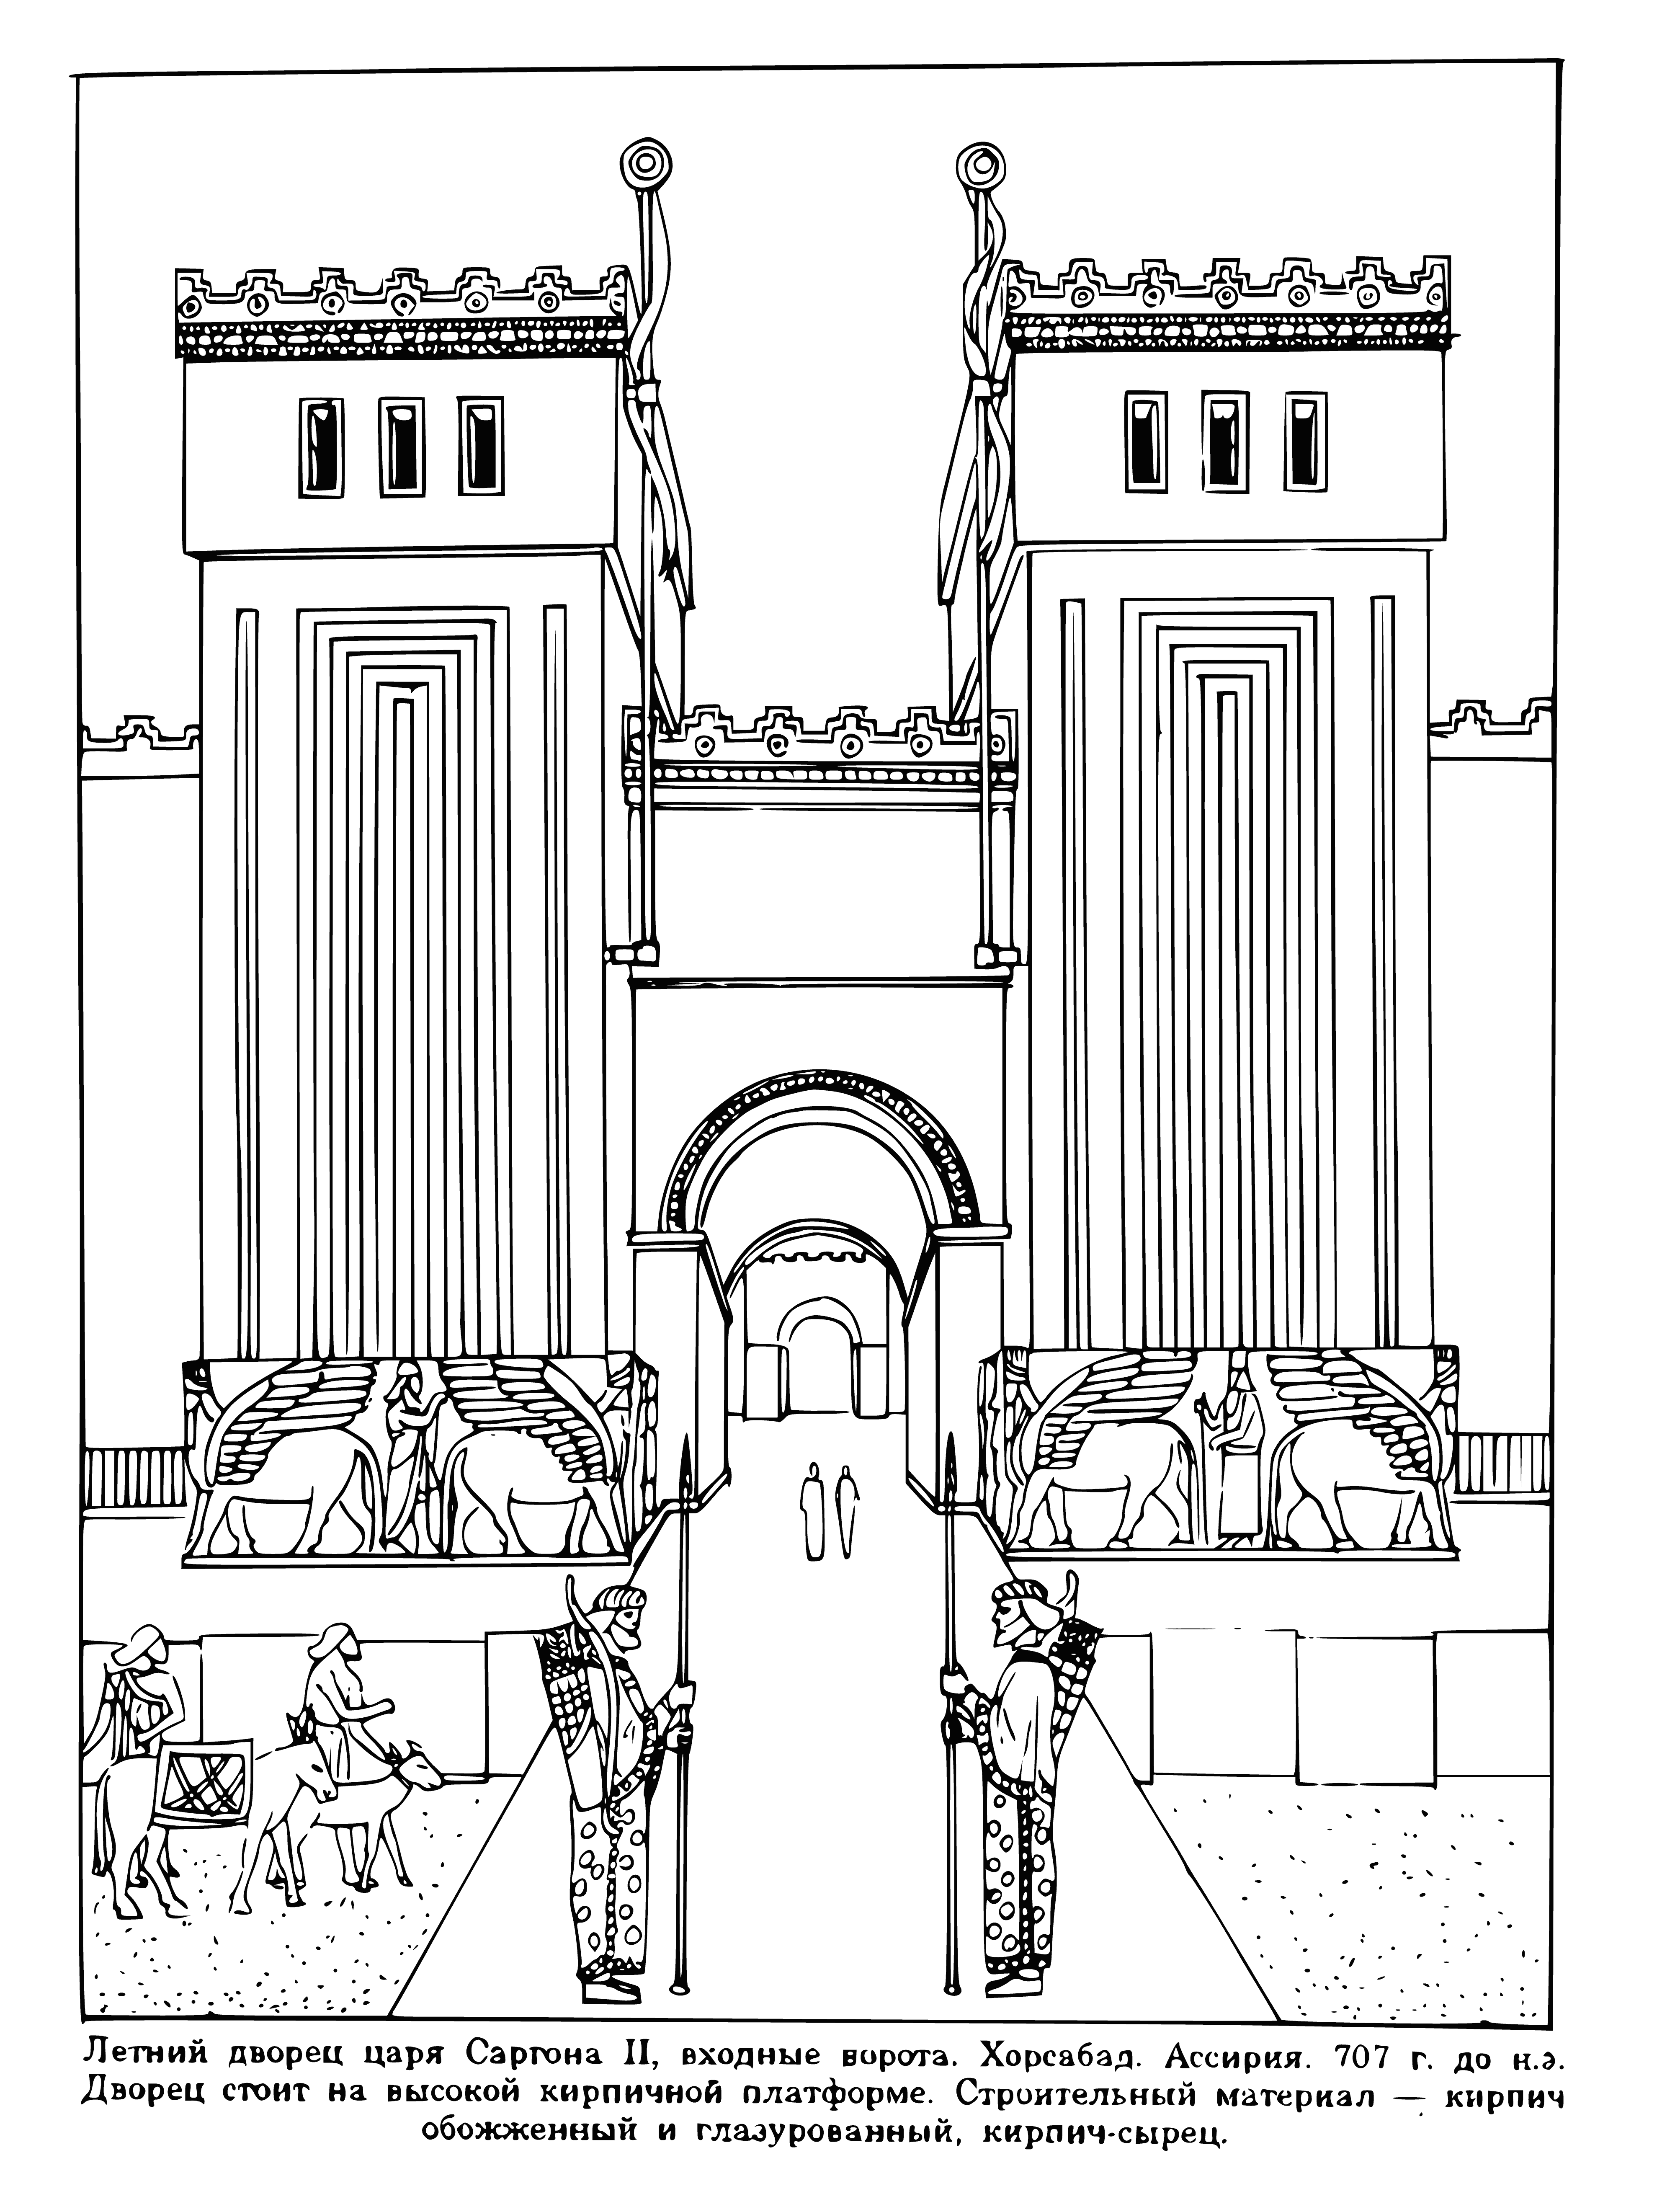 Kral Sargon Sarayı boyama sayfası